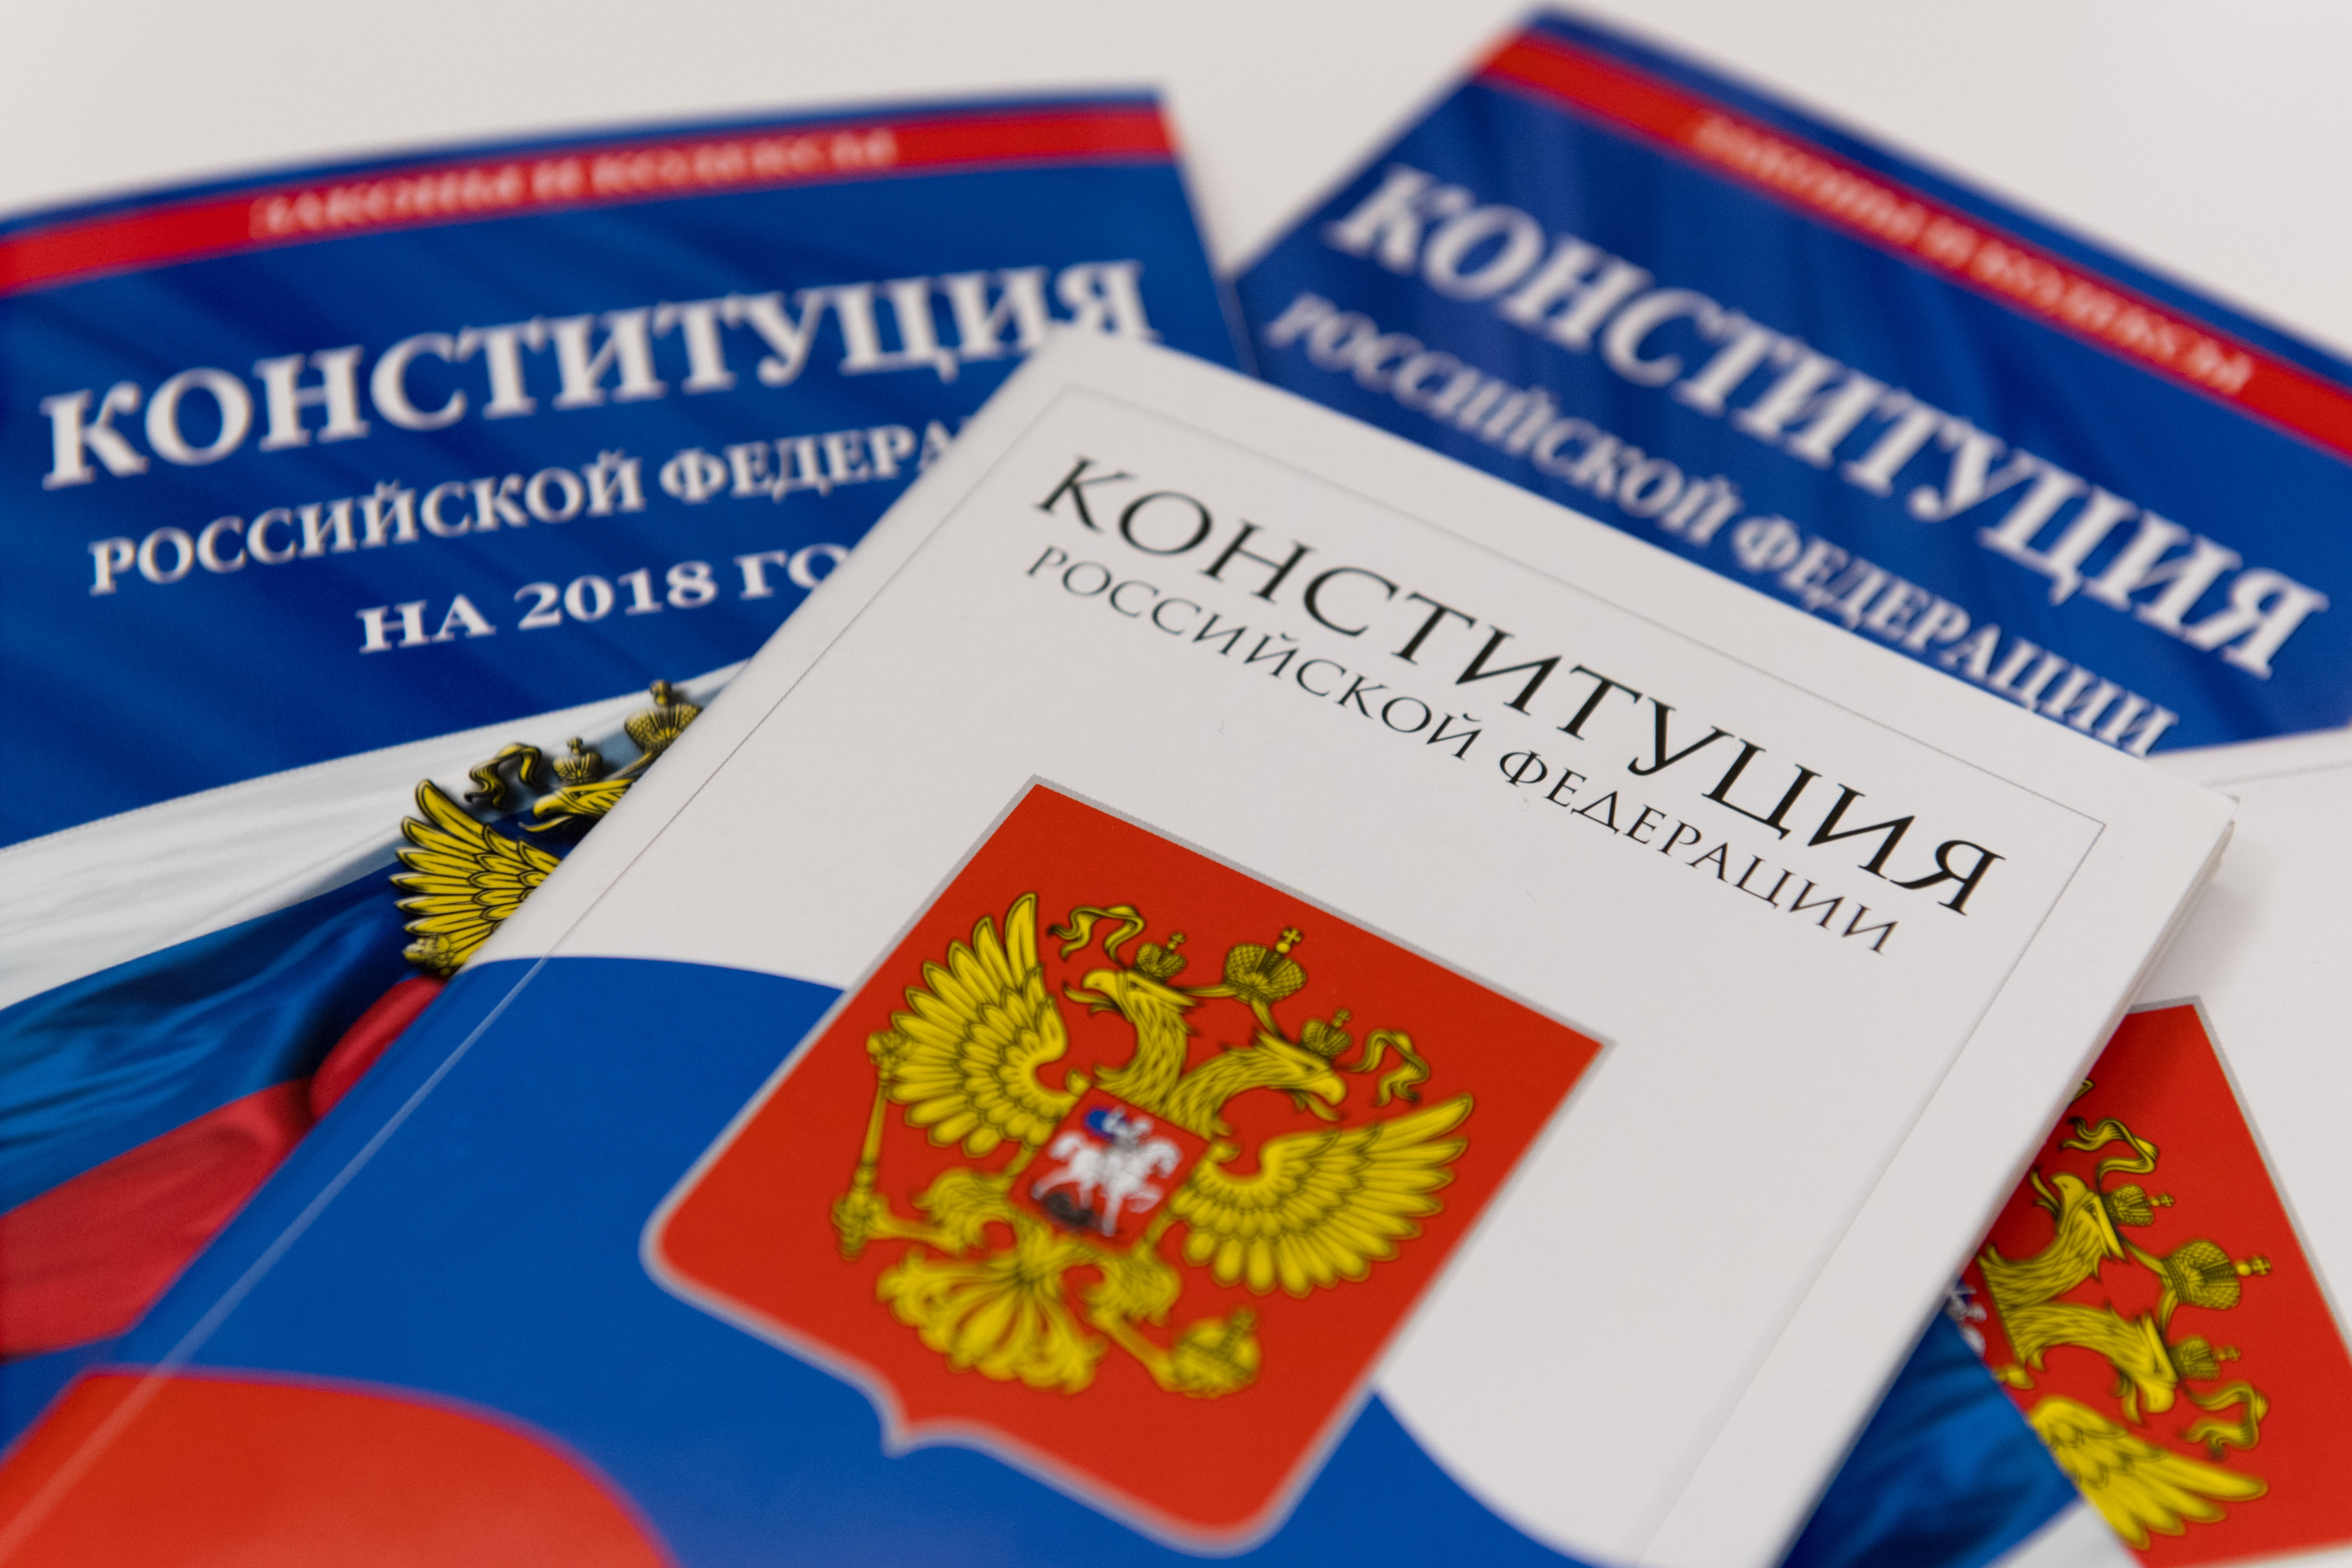 Ректор МГЮА: Конституция России — одна из самых демократичных в мире